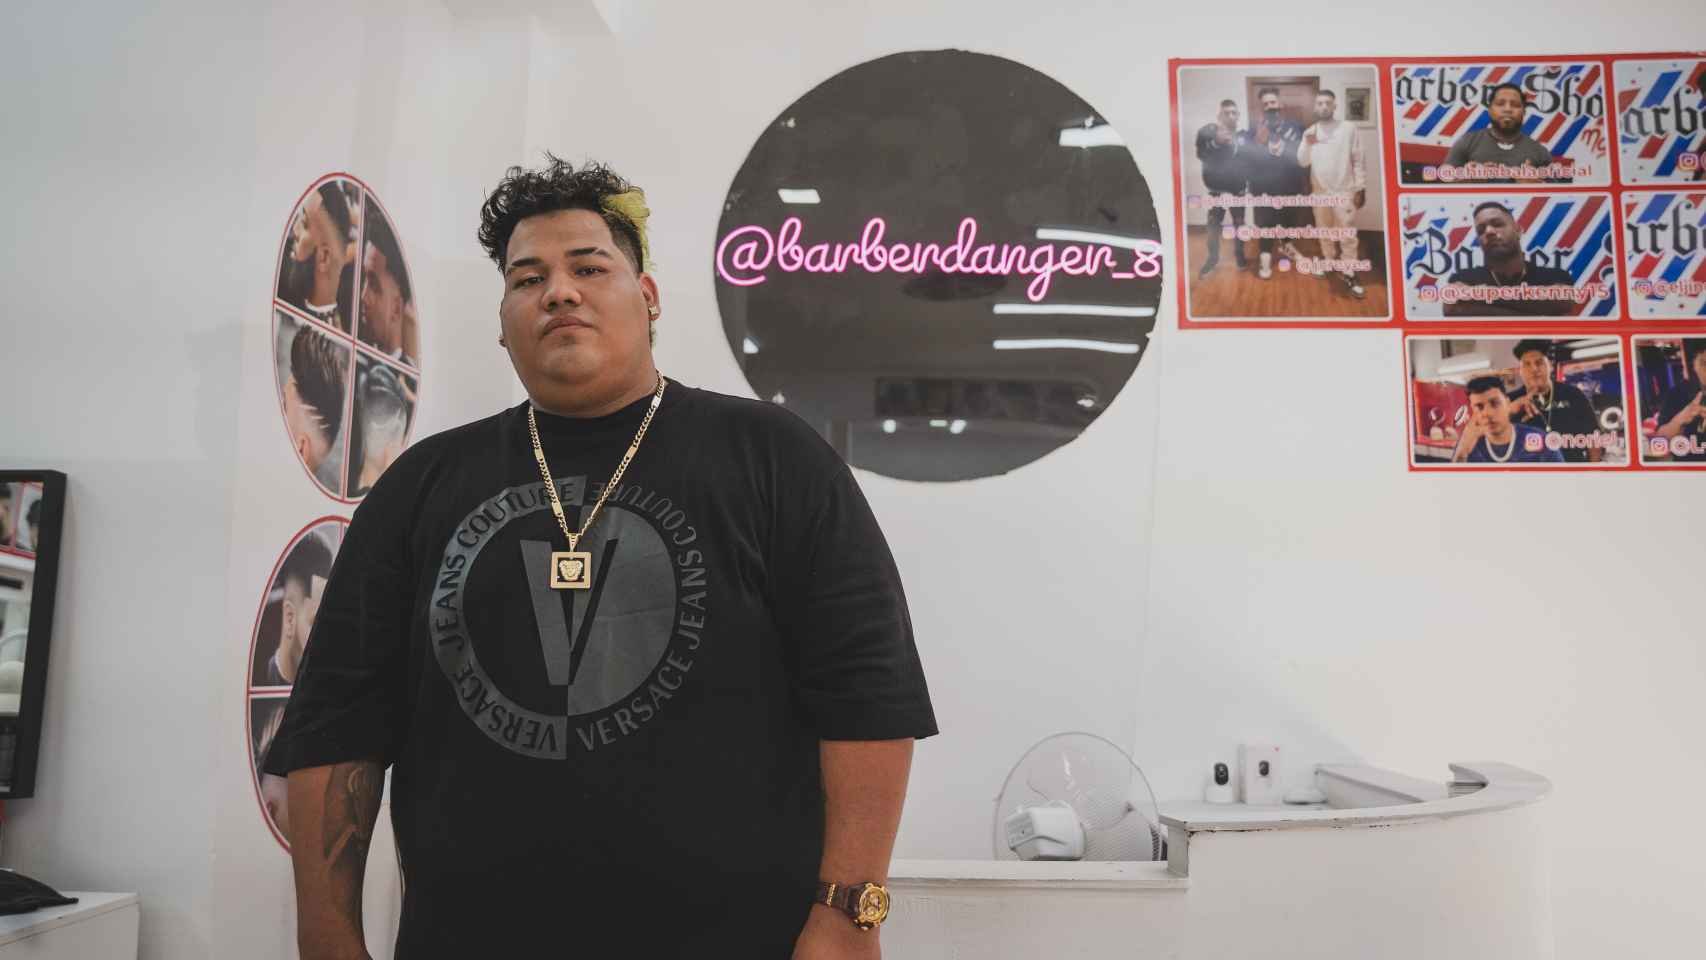 Anthony Márquez en el mostrador y junto al cartel con su Instagram '@barberdanger_8'.